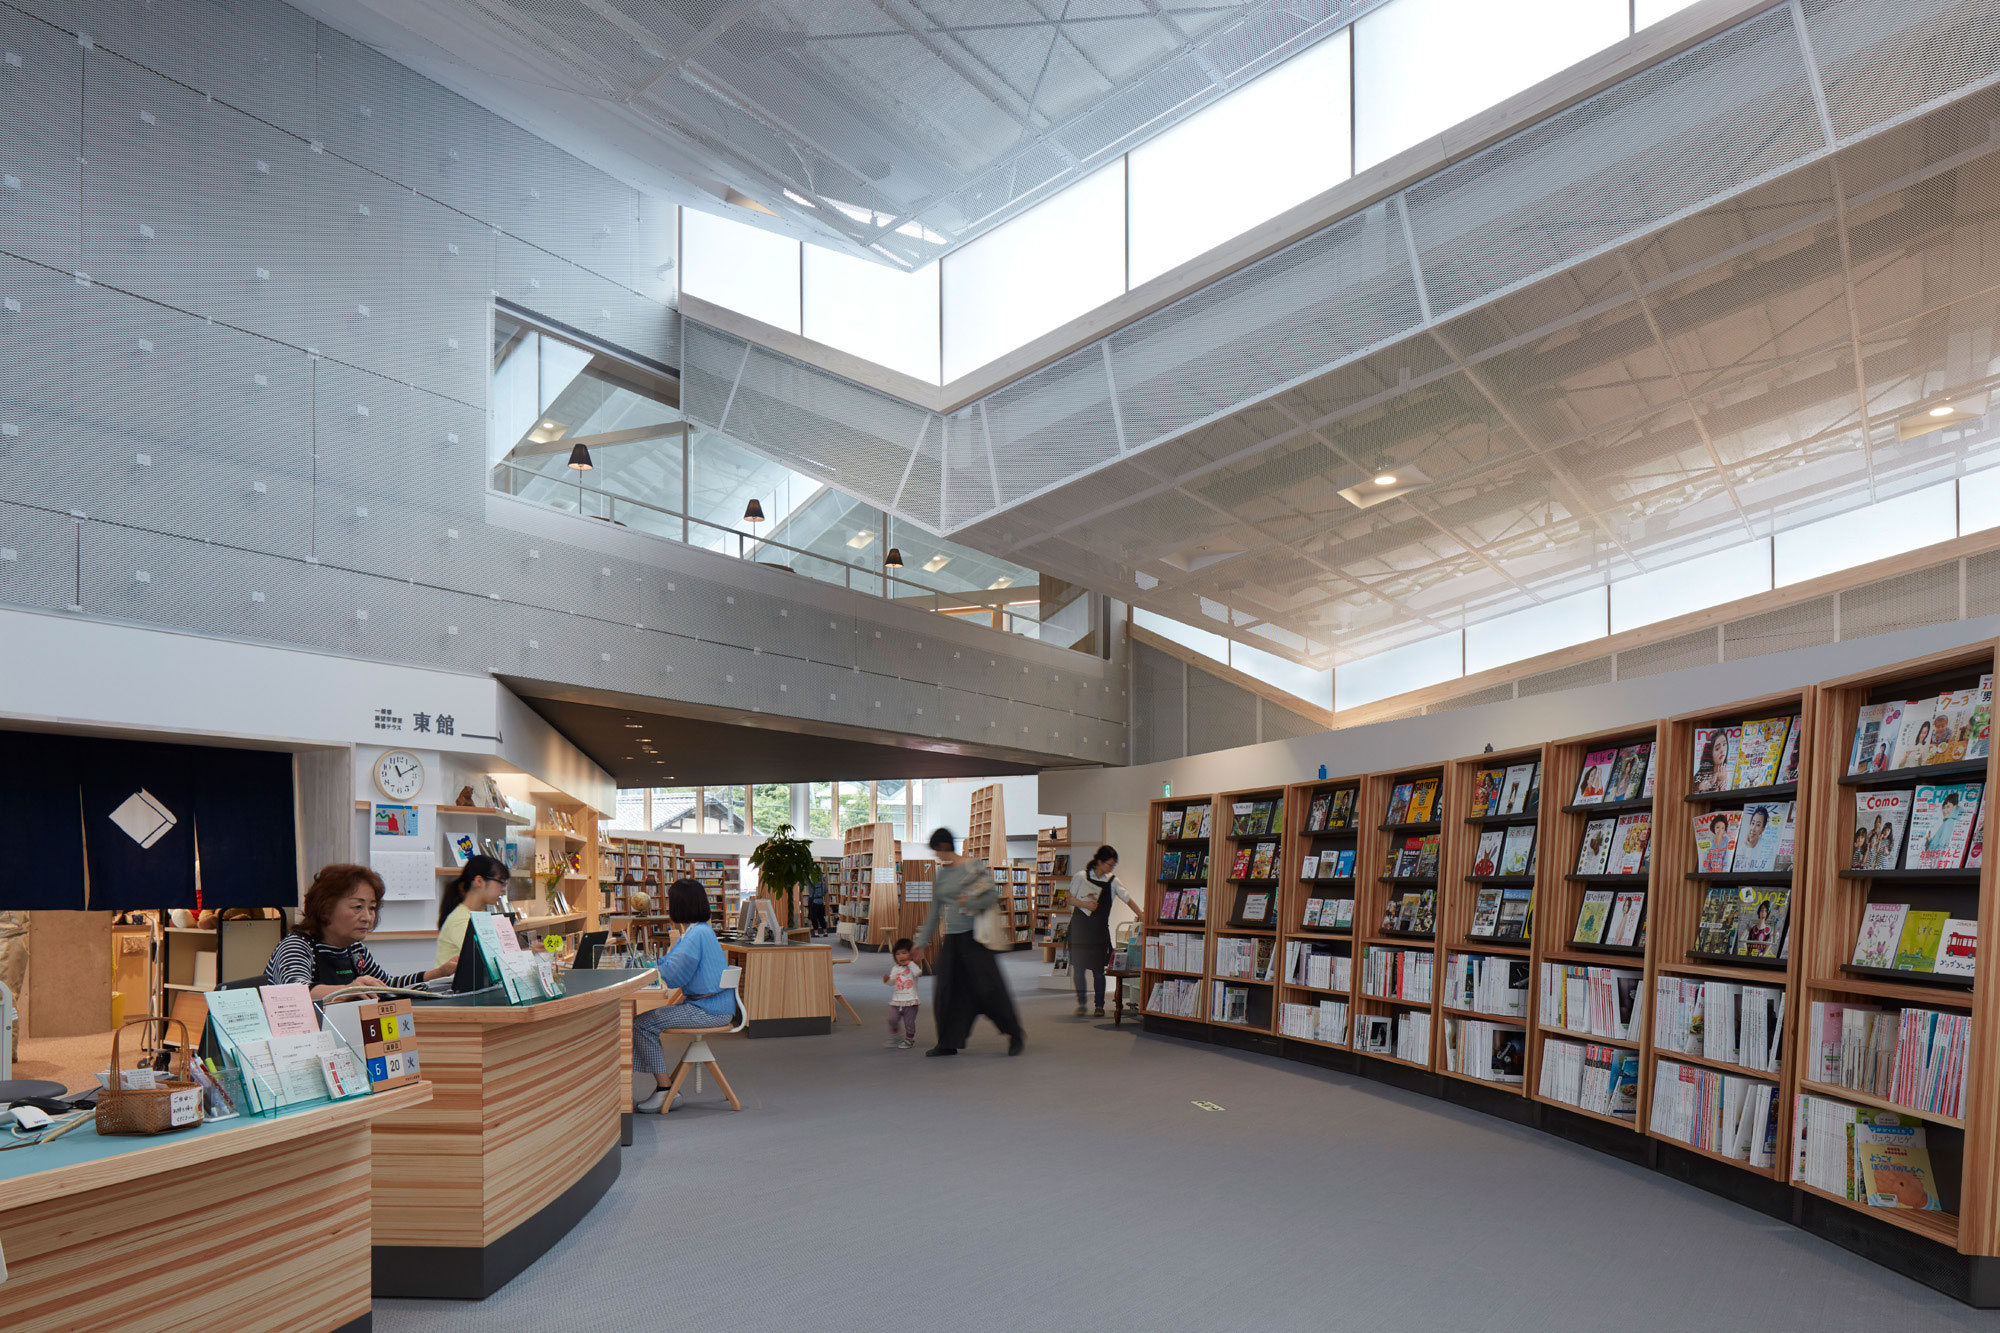 塩塚隆生アトリエによる 大分 竹田市の 竹田市立図書館 Architecturephoto Net